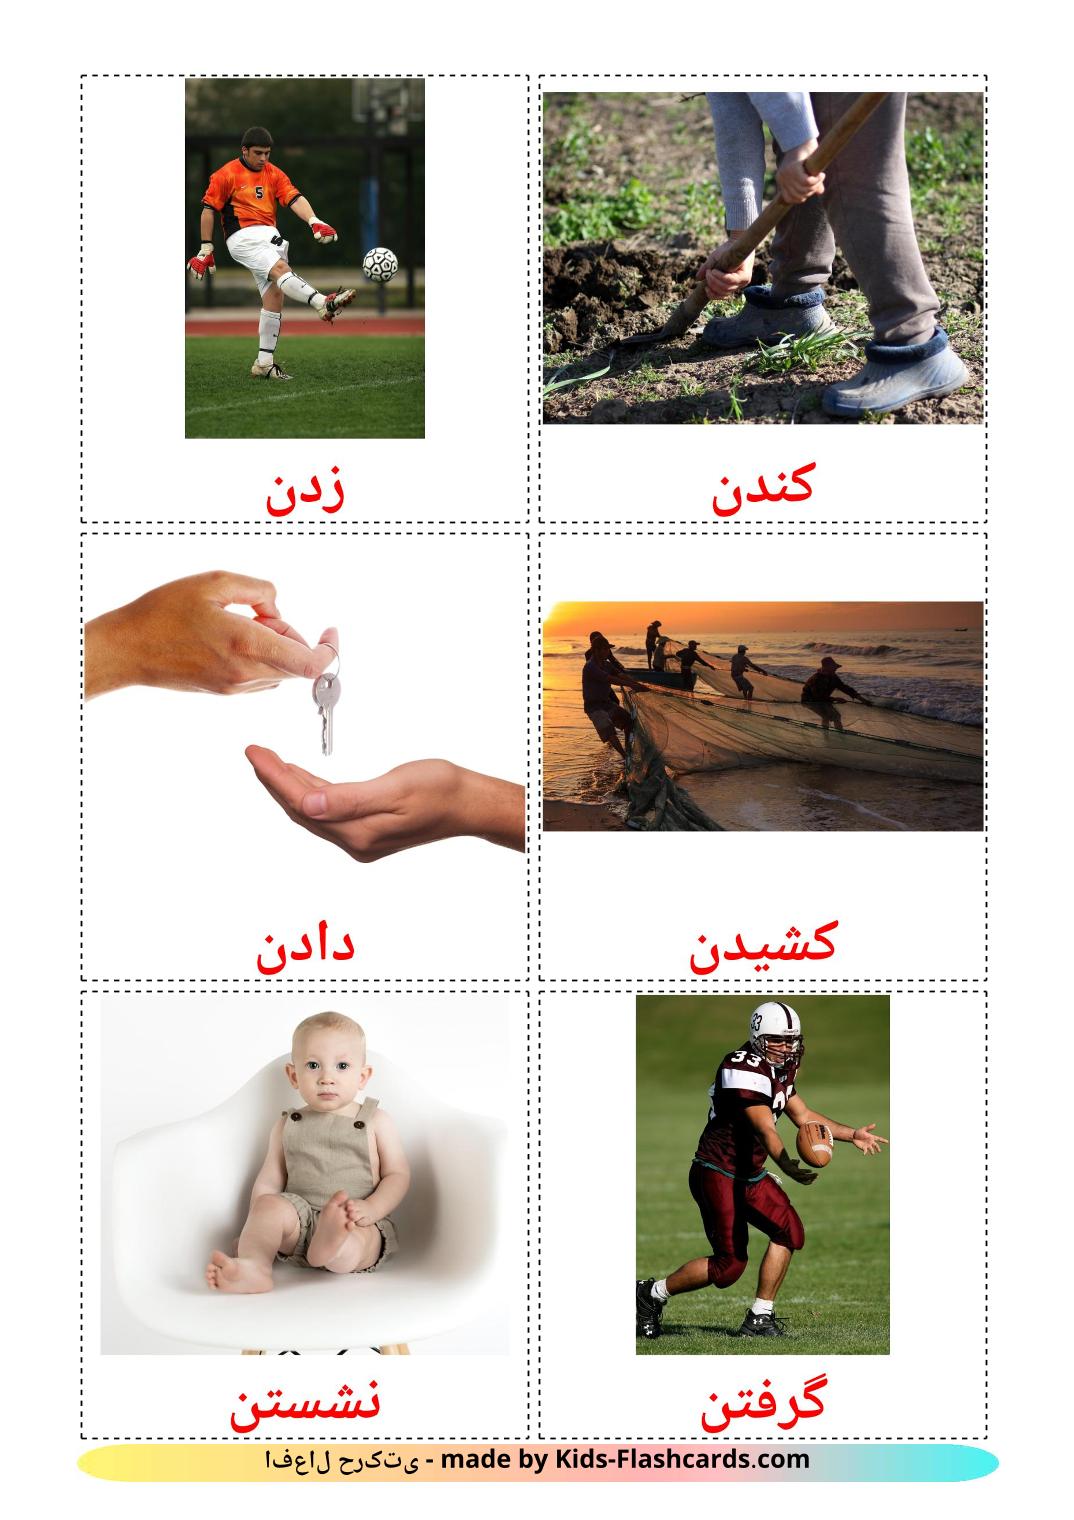 Aktionsverben - 51 kostenlose, druckbare Persisch Flashcards 